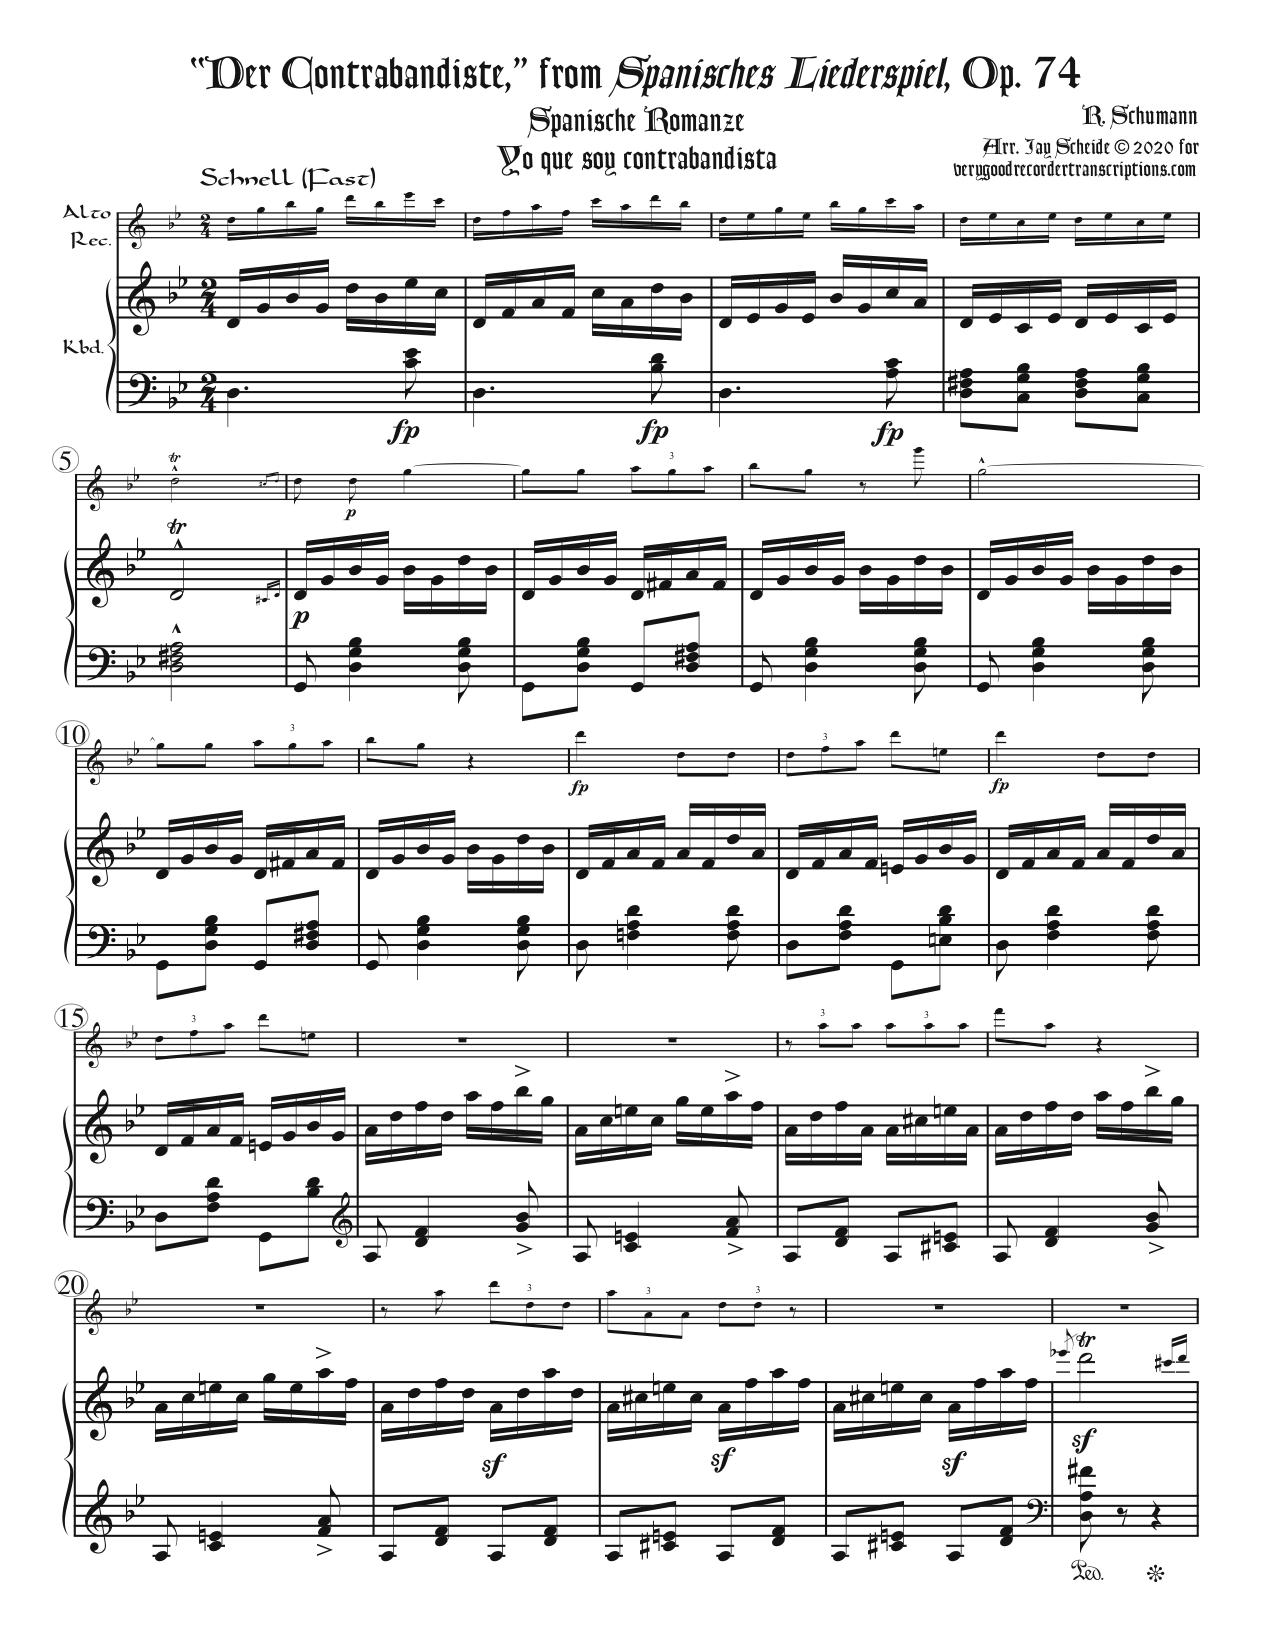 “Der Contrabandiste,” from *Spanisches Liederspiel*, Op. 74